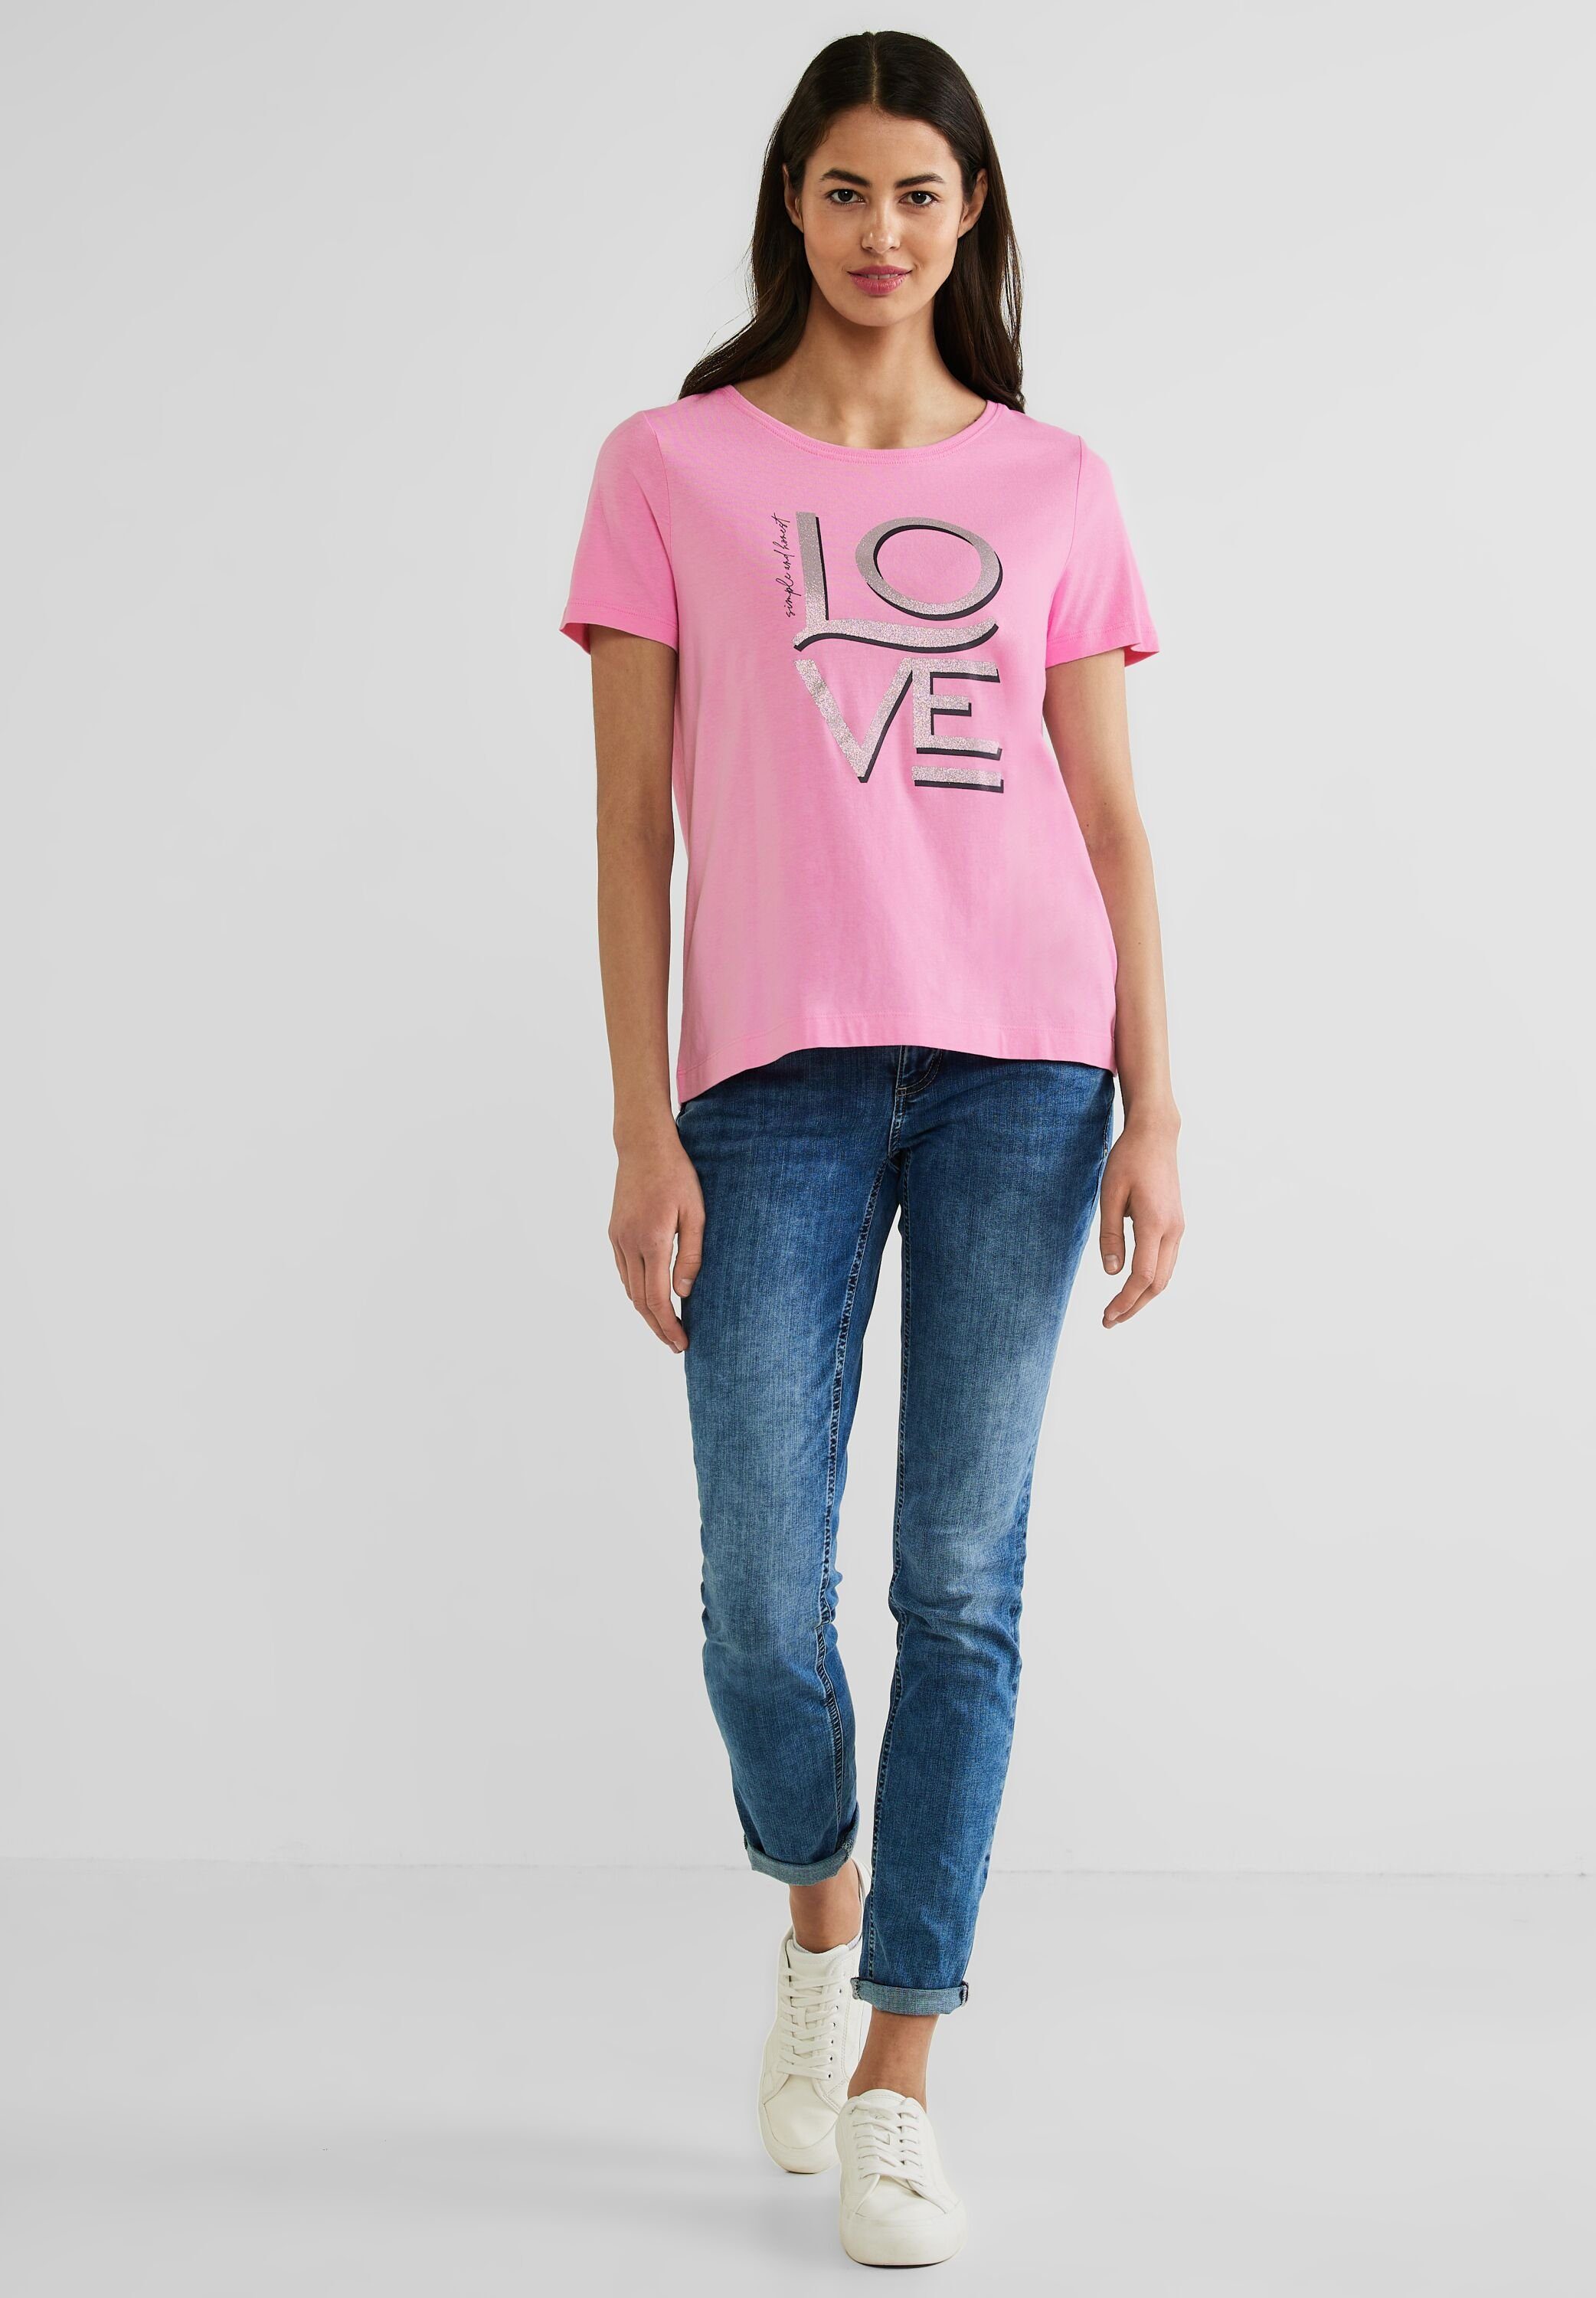 wild T-Shirt rose schimmerndem STREET Schriftzug mit ONE